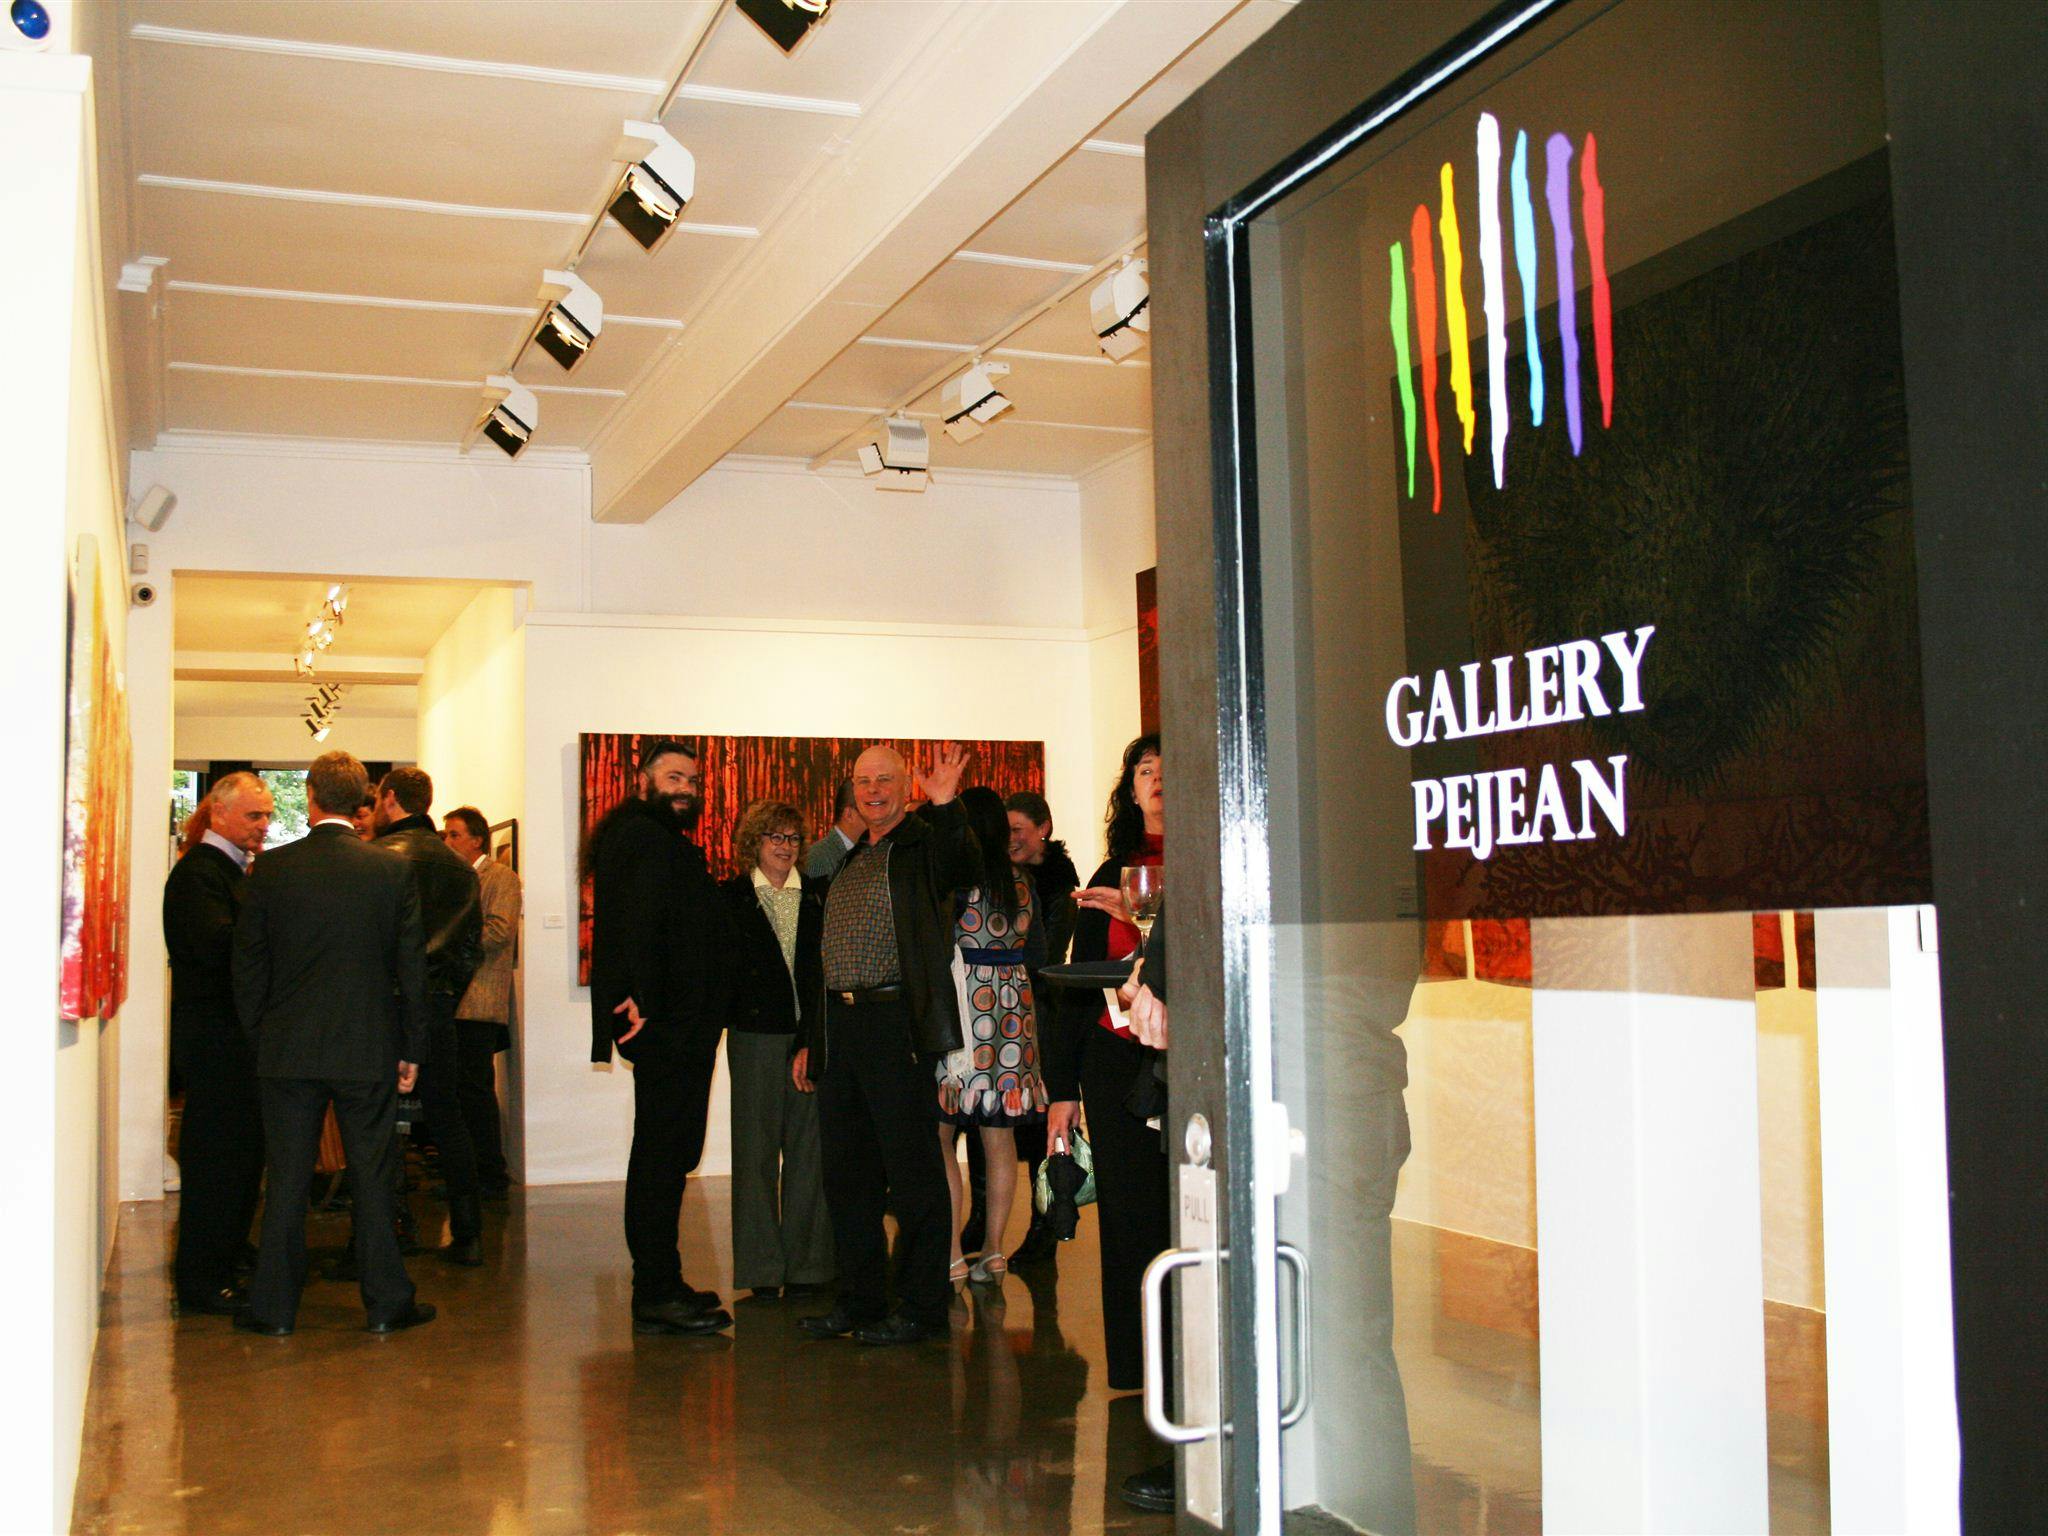 Gallery Pejean